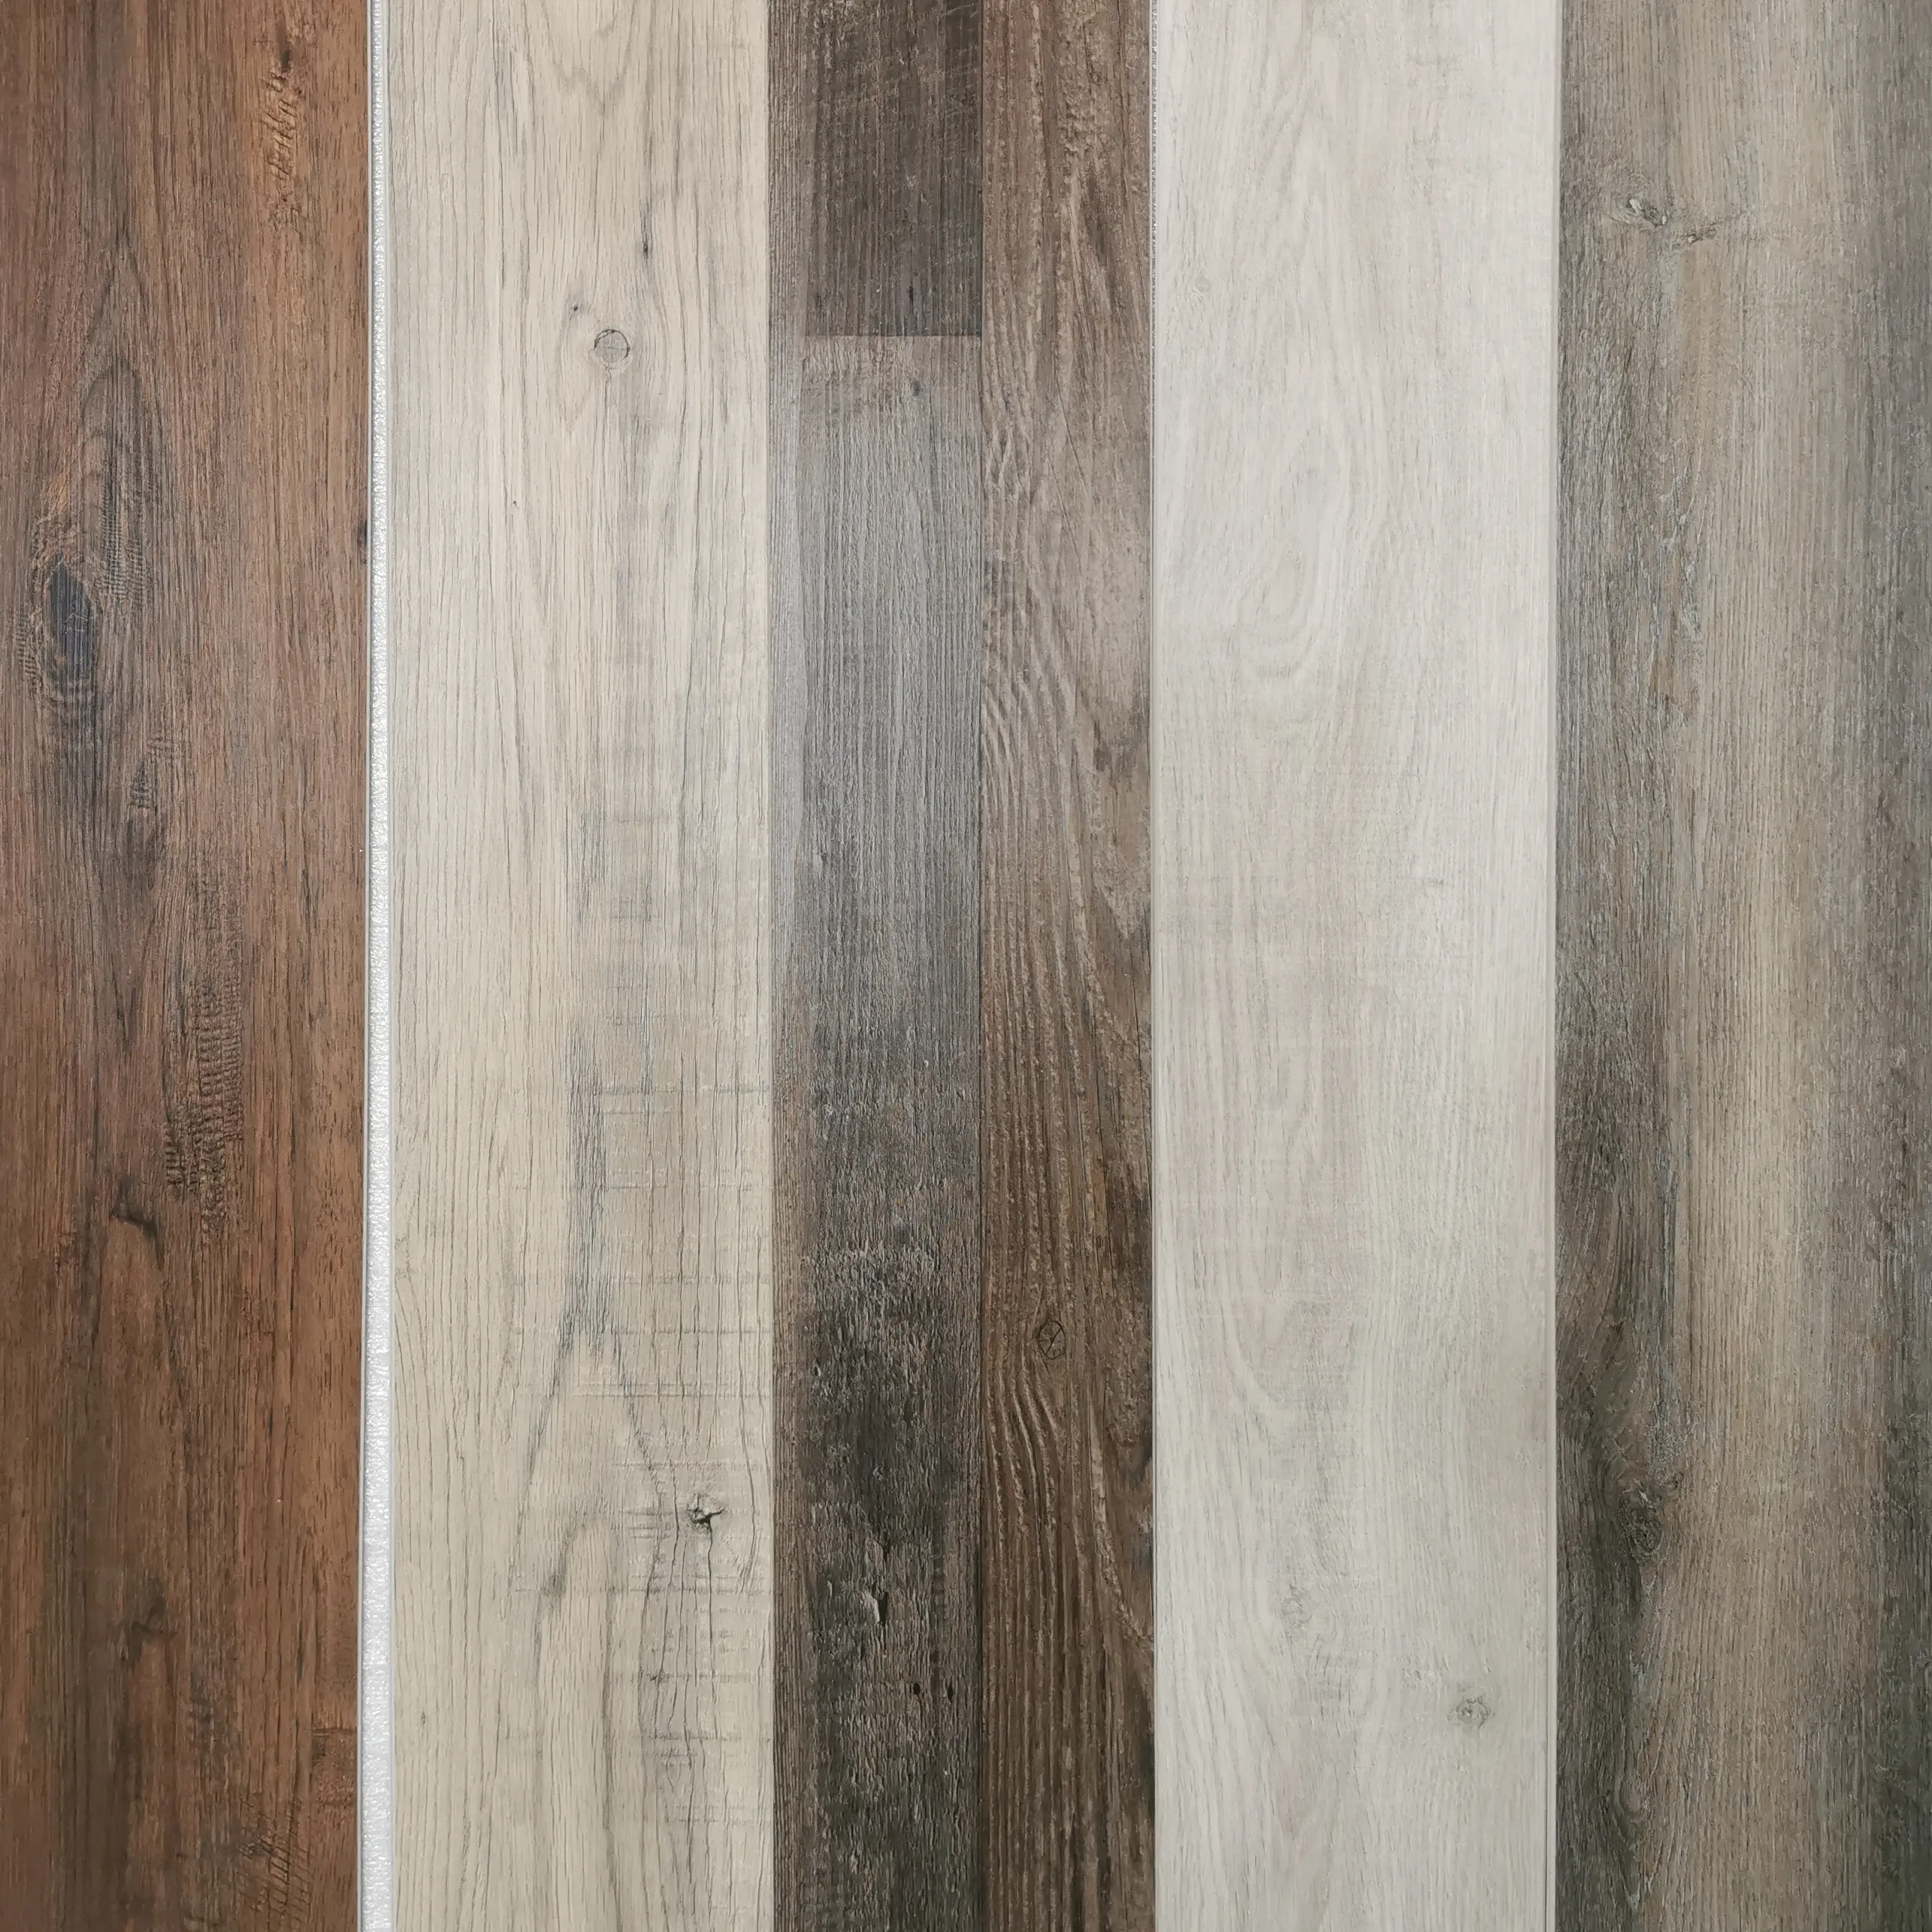 KEPLER CE floorscore Venda quente LVP grão de madeira clique 6.5mm luxo núcleo rígido vinil prancha piso de alto tráfego